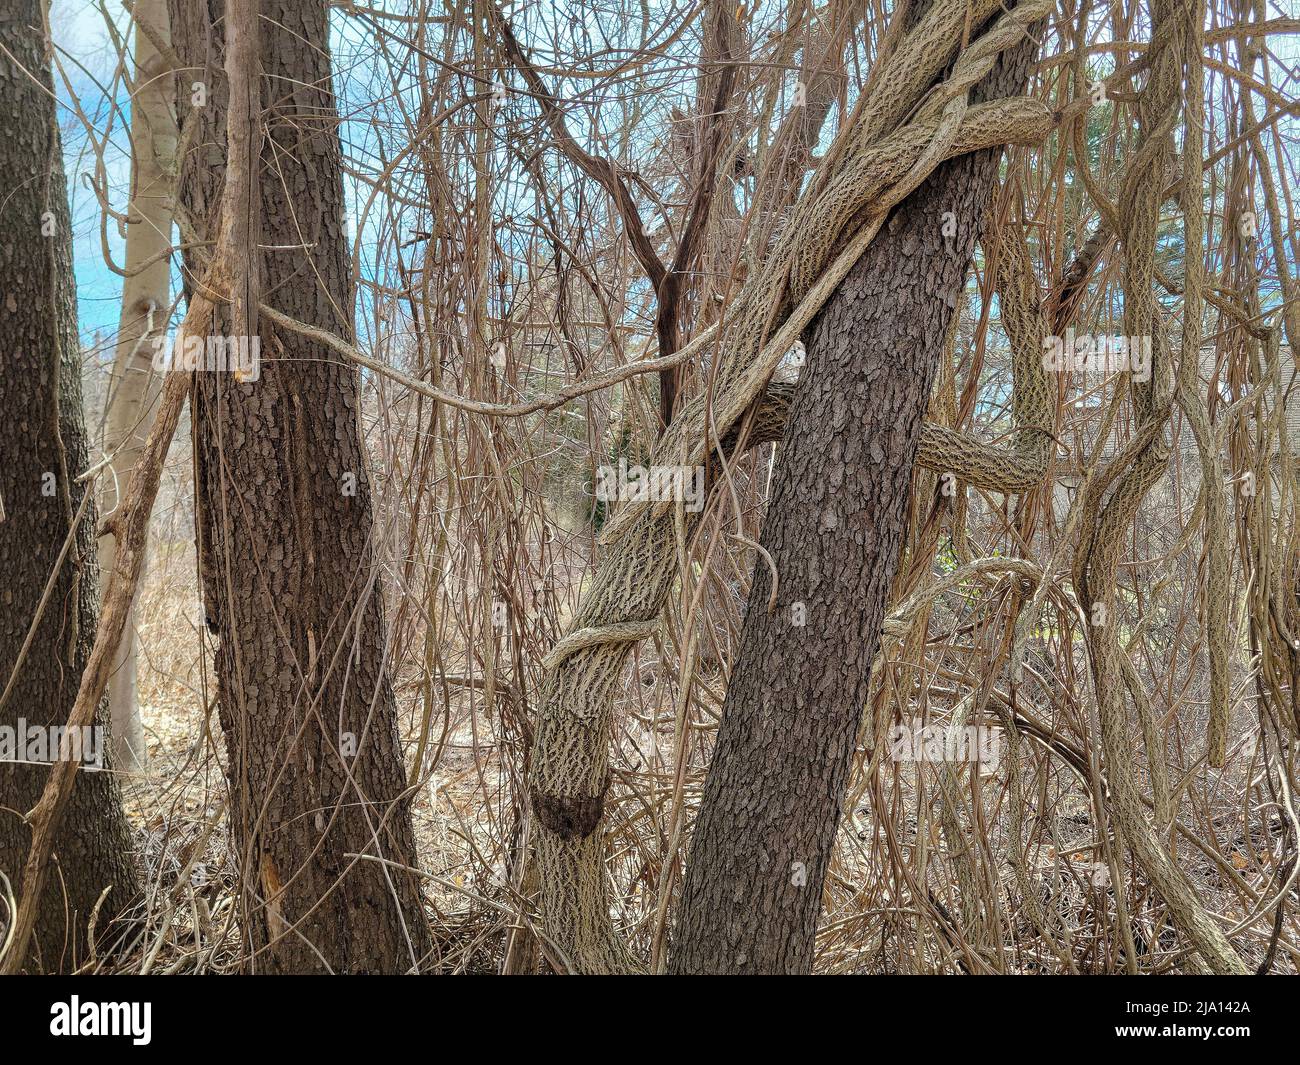 Vite intrecciata avvolta intorno ad un tronco d'albero in boschi primaverili Foto Stock